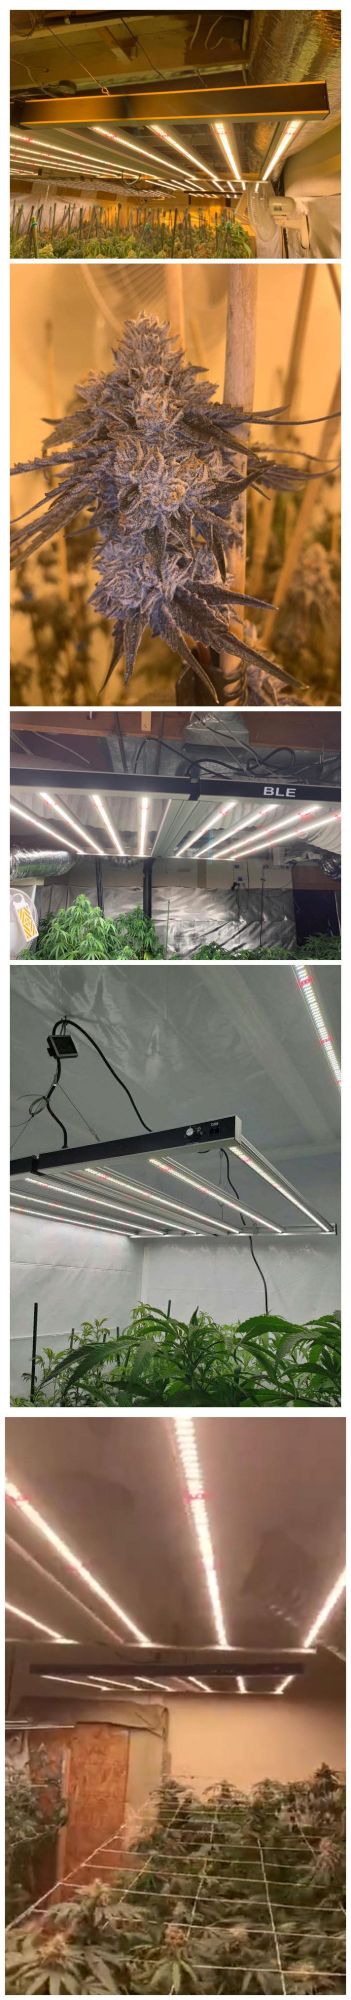 BLE Full Spectrum Foldable LED Grow Light 880W for Indoor Plant